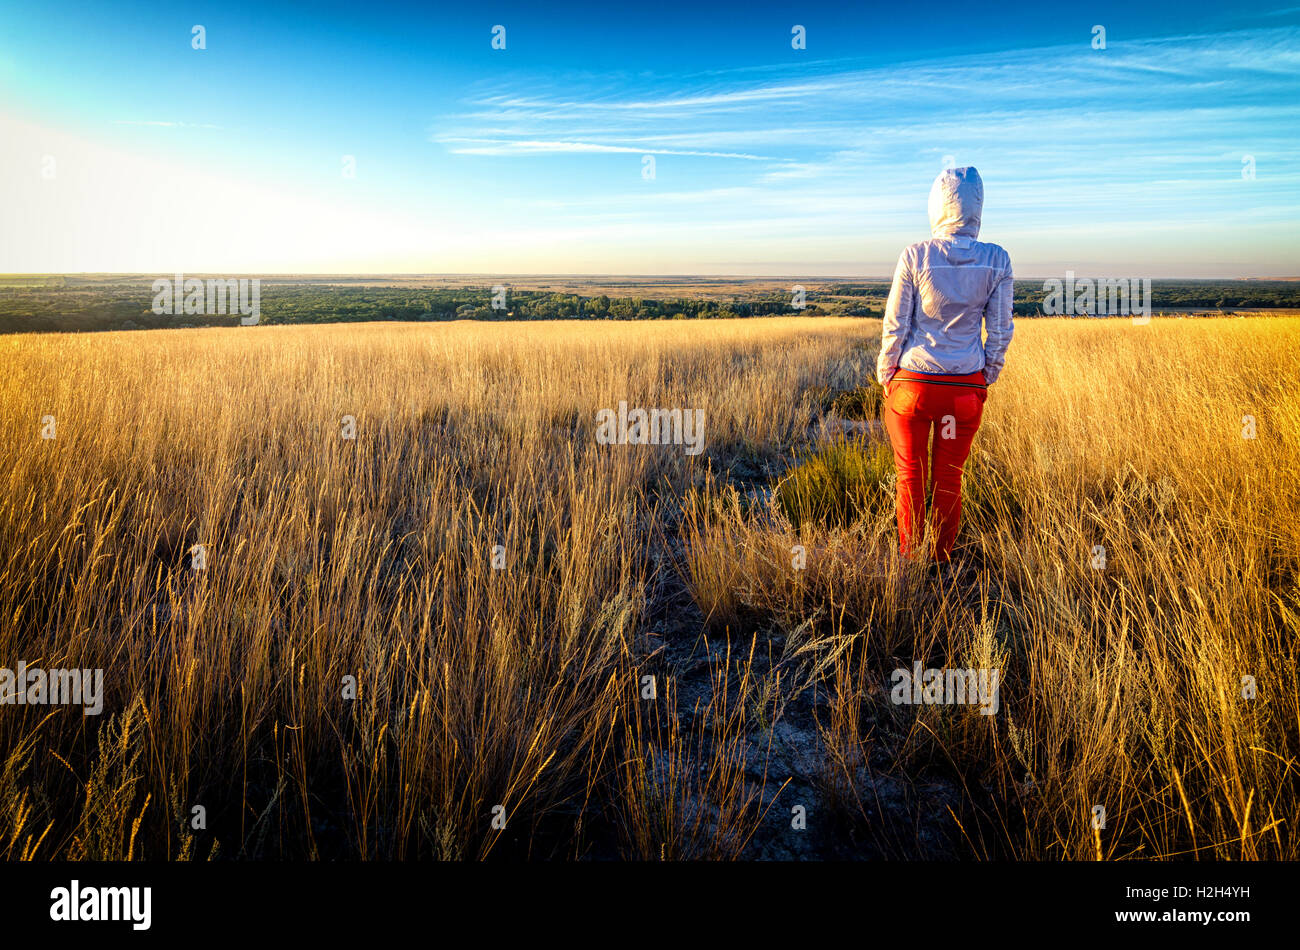 Junges schönes schlanke Mädchen trägt rote Hose und weiße Hoodie bleibt in einem Feld Goldene Gras bei Sonnenuntergang, zurück zur Kamera, der Sonne zugewandt. Blauer Himmel mit dünnen Wolken im Hintergrund. Reise-Fotografie Stockfoto